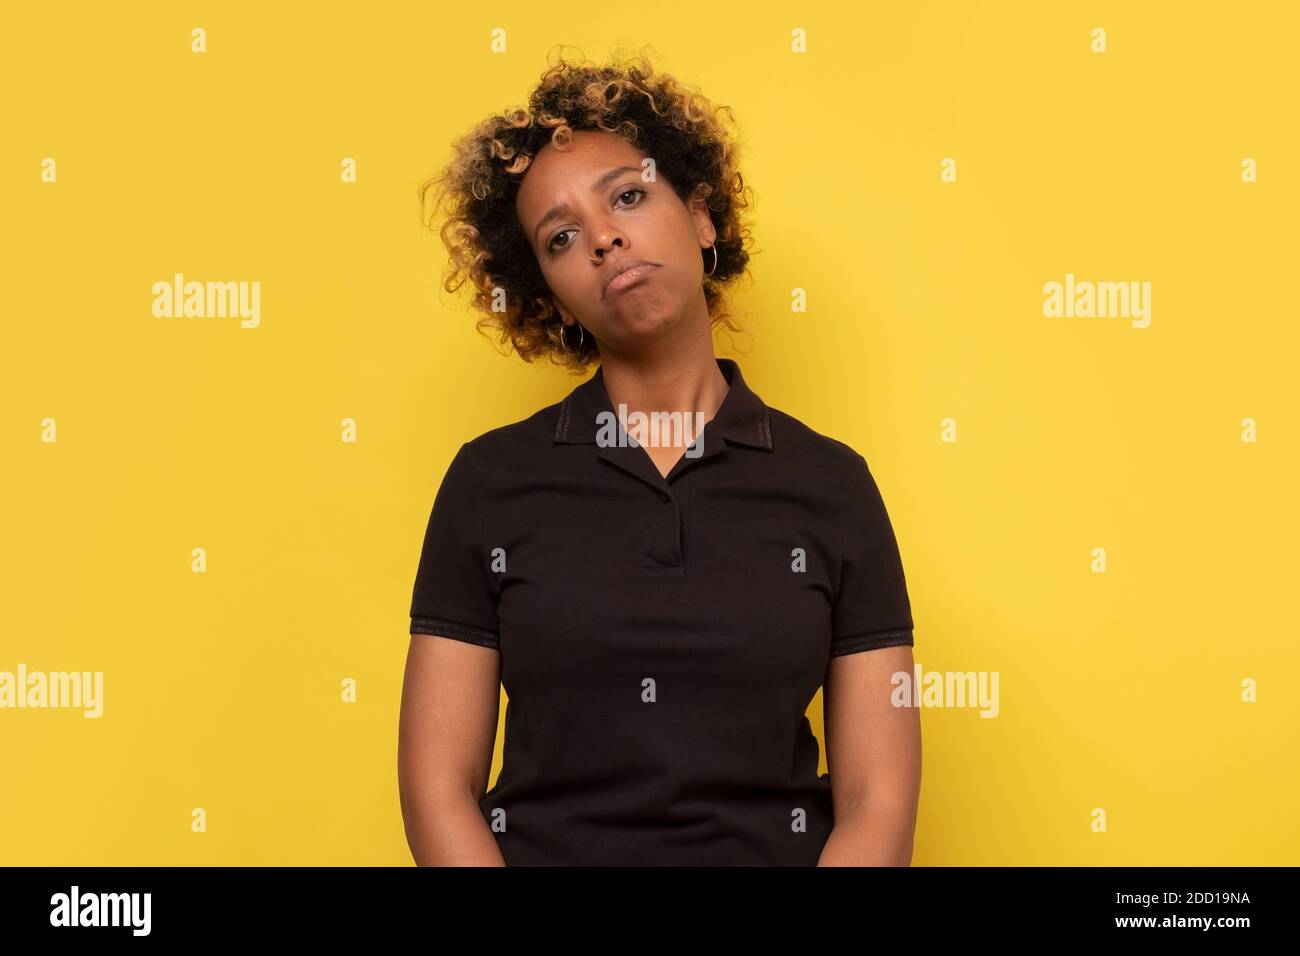 Junge afroamerikanische Frau, die deprimiert ist und sich um Not sorgt. Trauriger negativer Gesichtsausdruck. Stockfoto